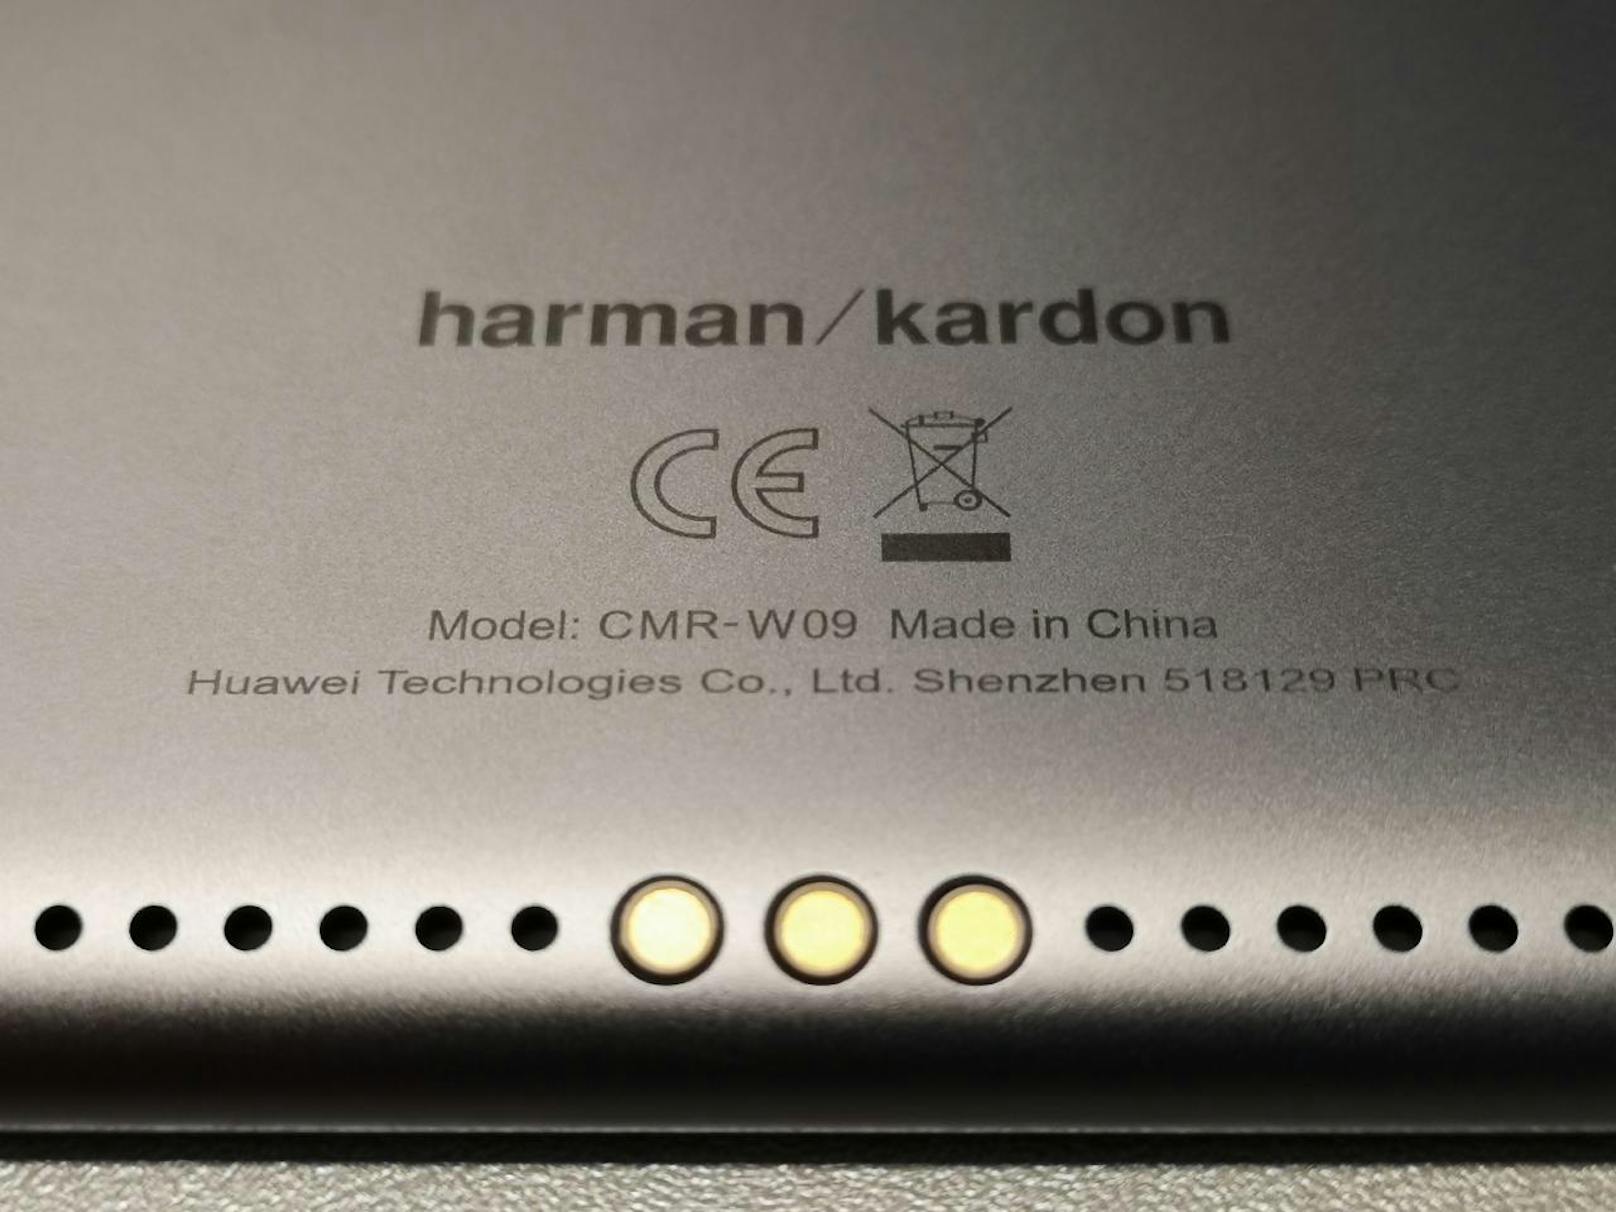 Schade ist, dass Huawei einen Stift, die neue M-Pen, nur beim Pro-Modell des Tablets anbietet. Das große M5 wäre ebenso prädestiniert dafür. Dafür funktioniert das Arbeiten in mehreren Fenstern perfekt und eine Maus kann ebenso genutzt werden wie eine Tastatur. Eine solche kann auch über die Pins an der Rückseite angedockt werden.